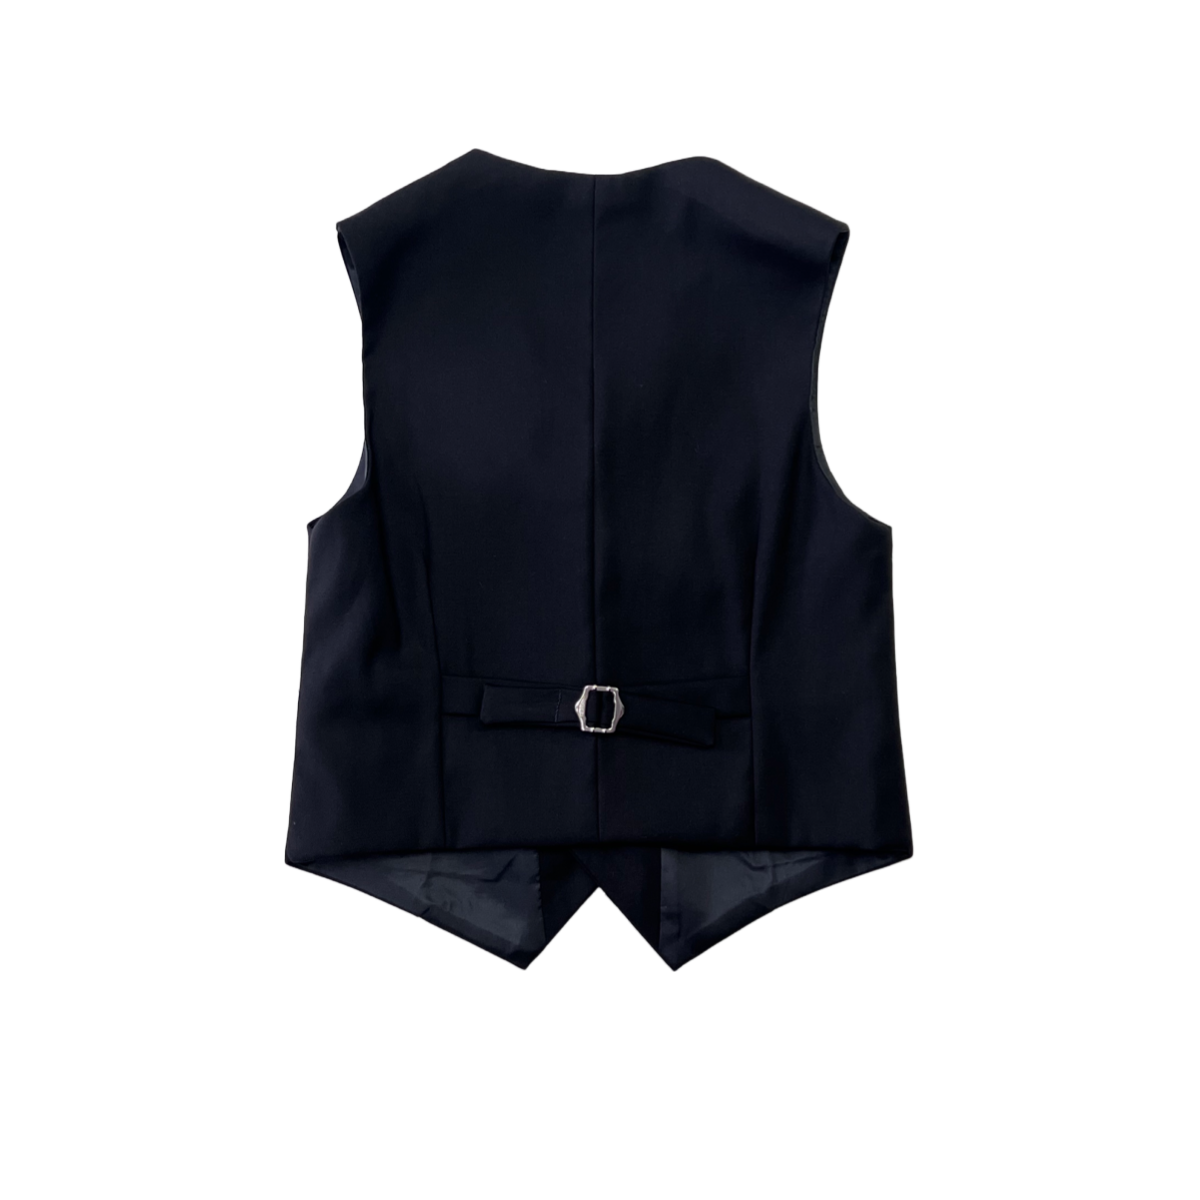 Debonair Slim-Fit Black Suit